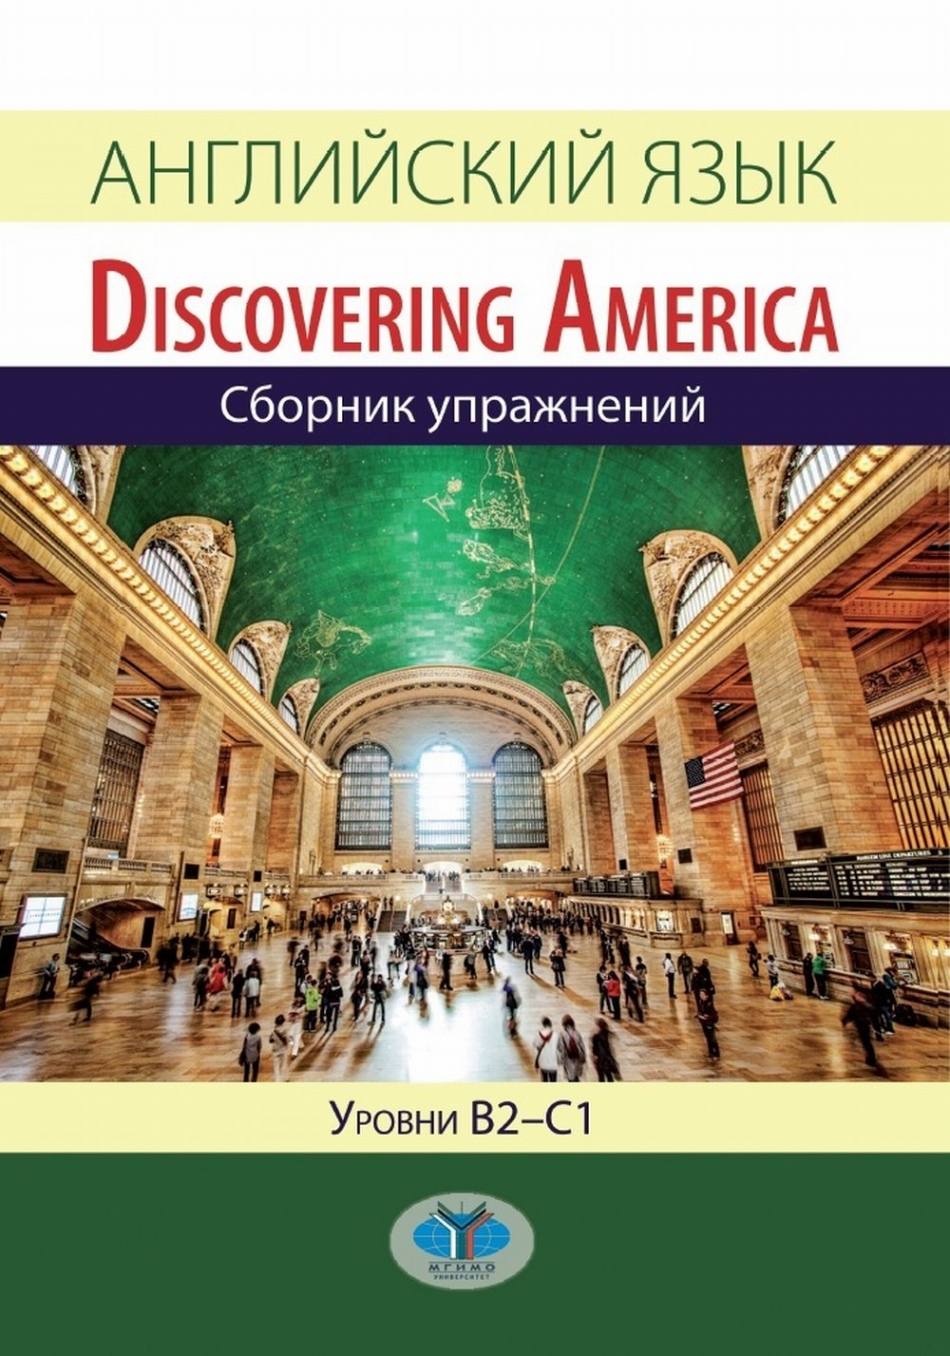 Конколь М.М., Шеменкова С.С., Блинова О.А. Английский язык / Discovering America. Уровни В2-С1 